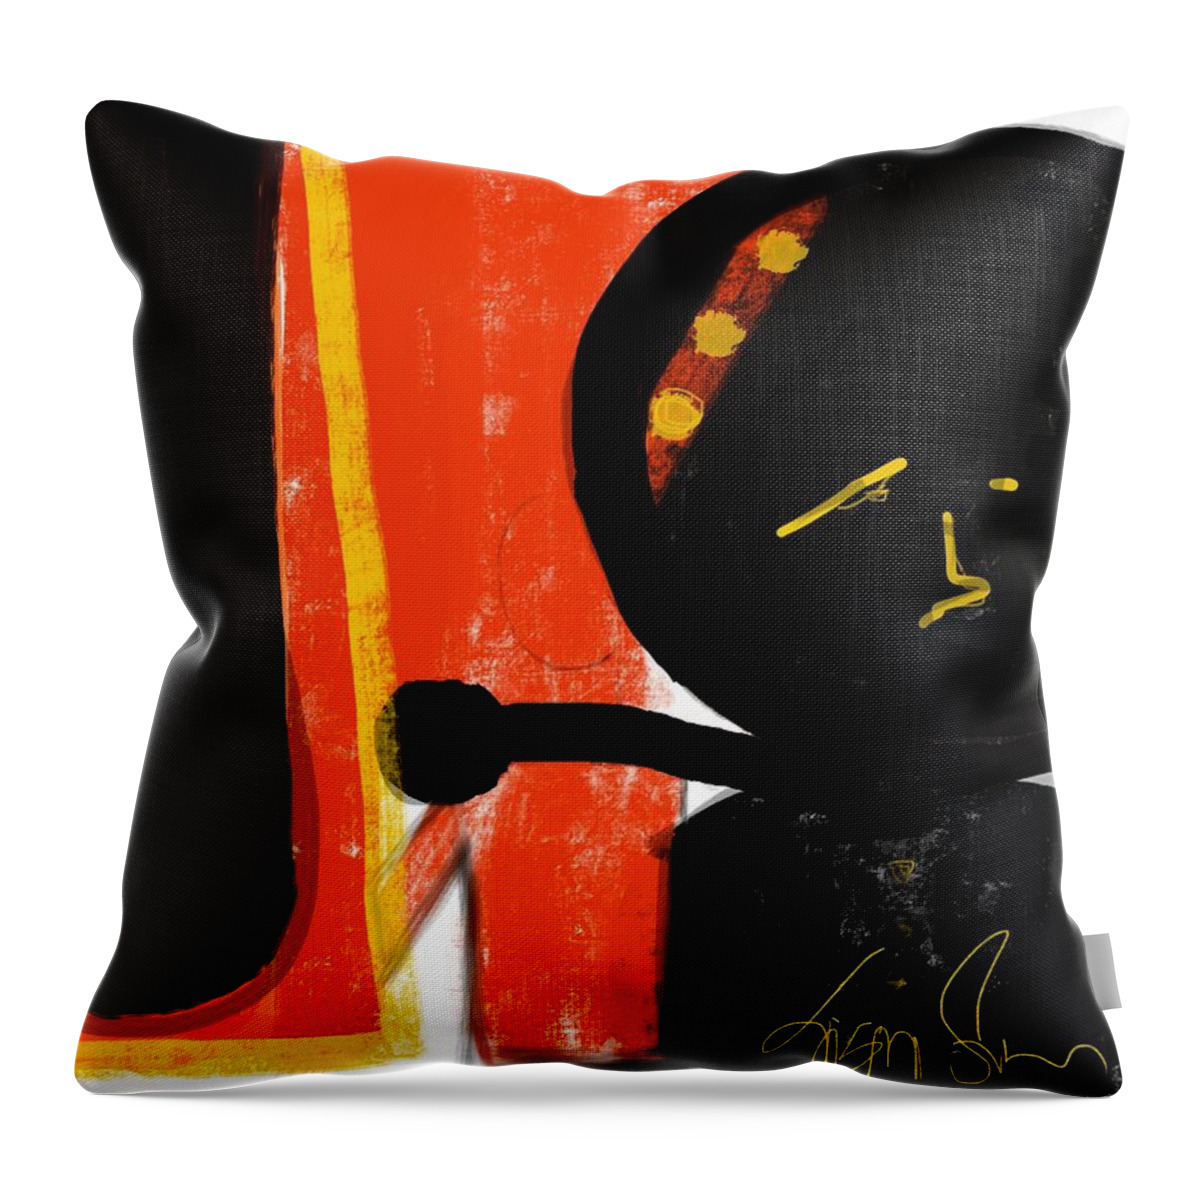 Susanfielderart Throw Pillow featuring the digital art I've Got Your Back by Susan Fielder